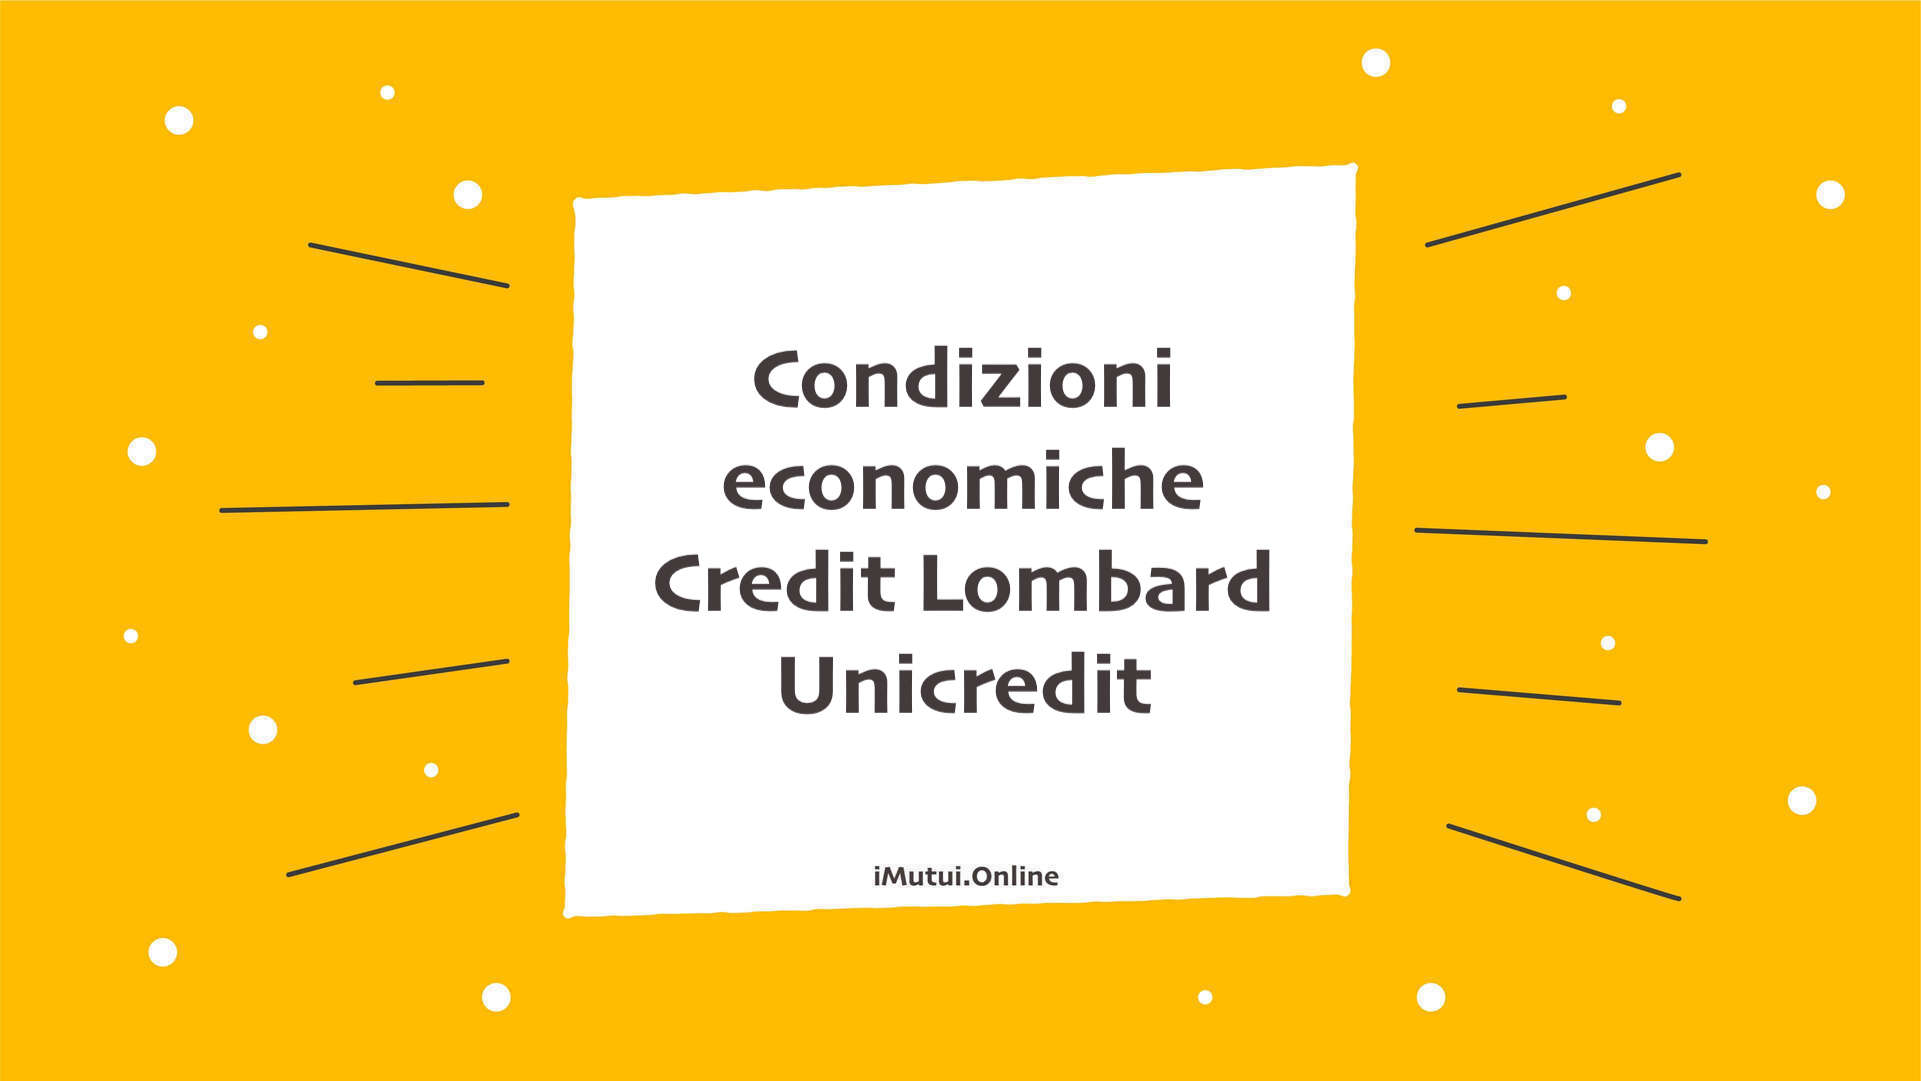 Condizioni economiche del credit lombard di Unicredit